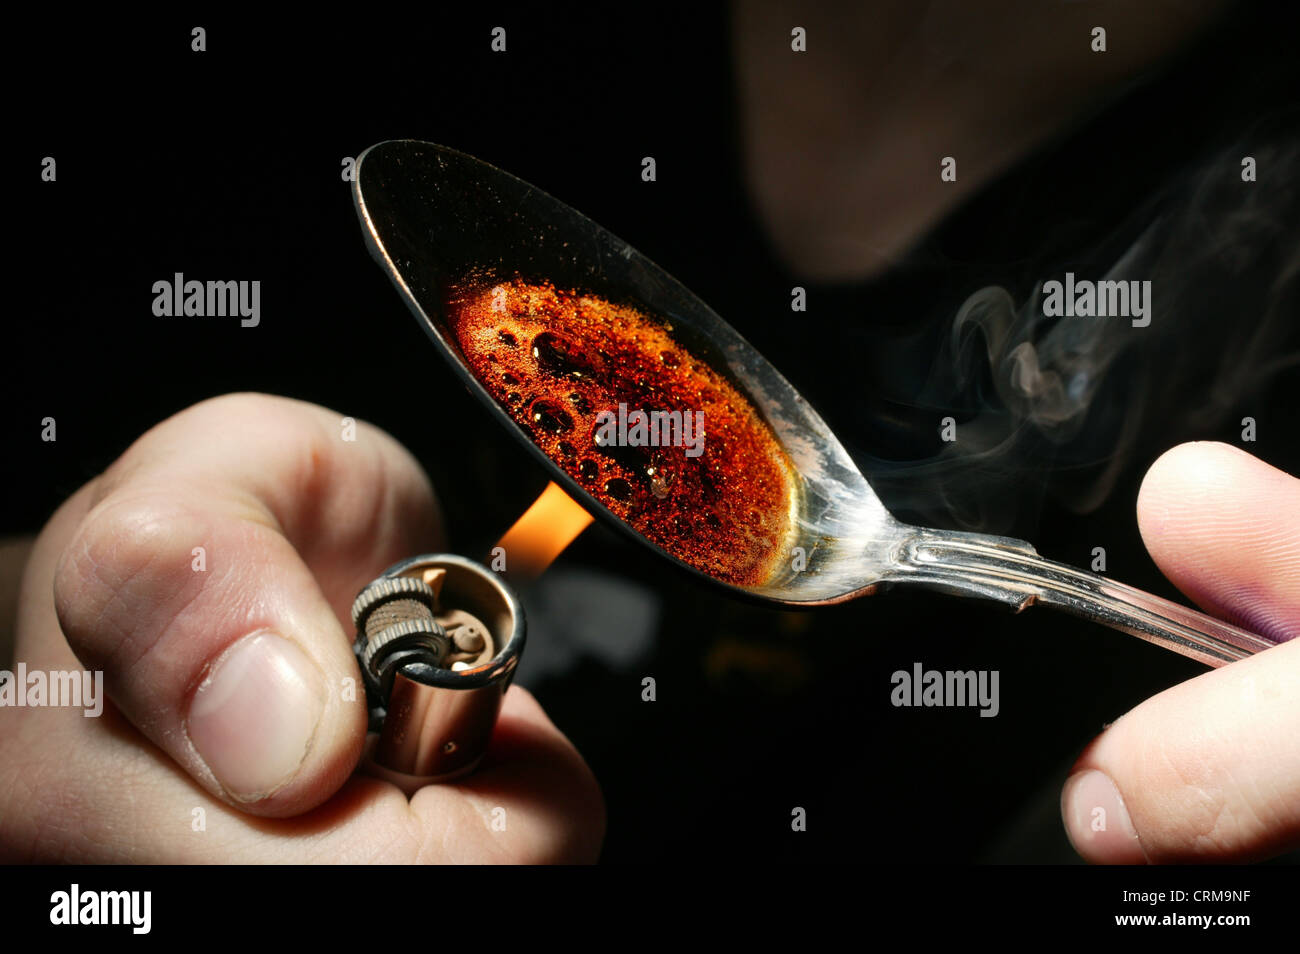 Cooking drugs fotografías e imágenes de alta resolución - Alamy